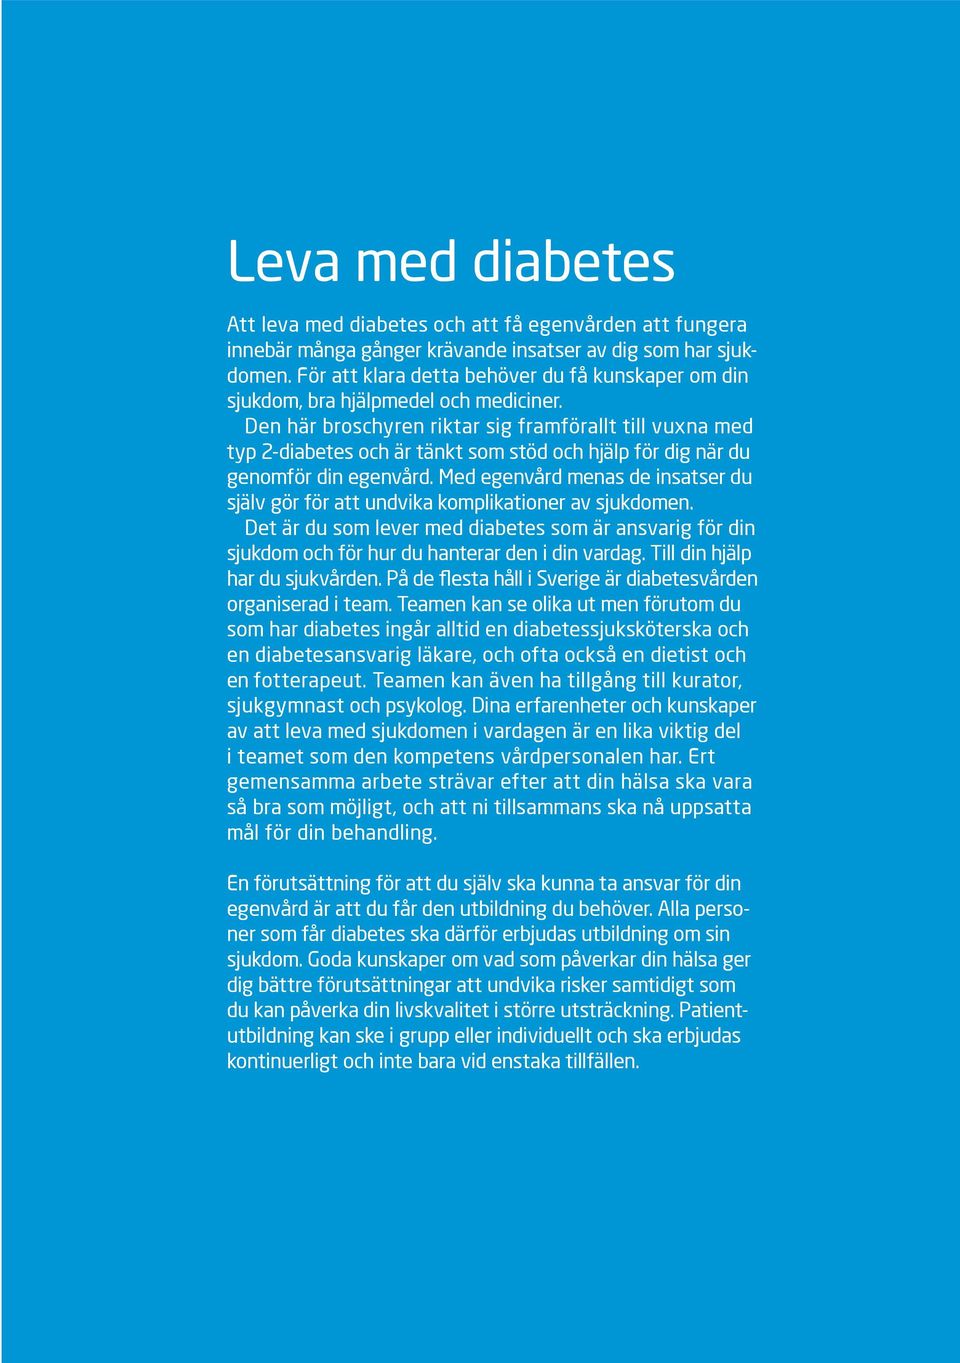 Den här broschyren riktar sig framförallt till vuxna med typ 2-diabetes och är tänkt som stöd och hjälp för dig när du genomför din egenvård.